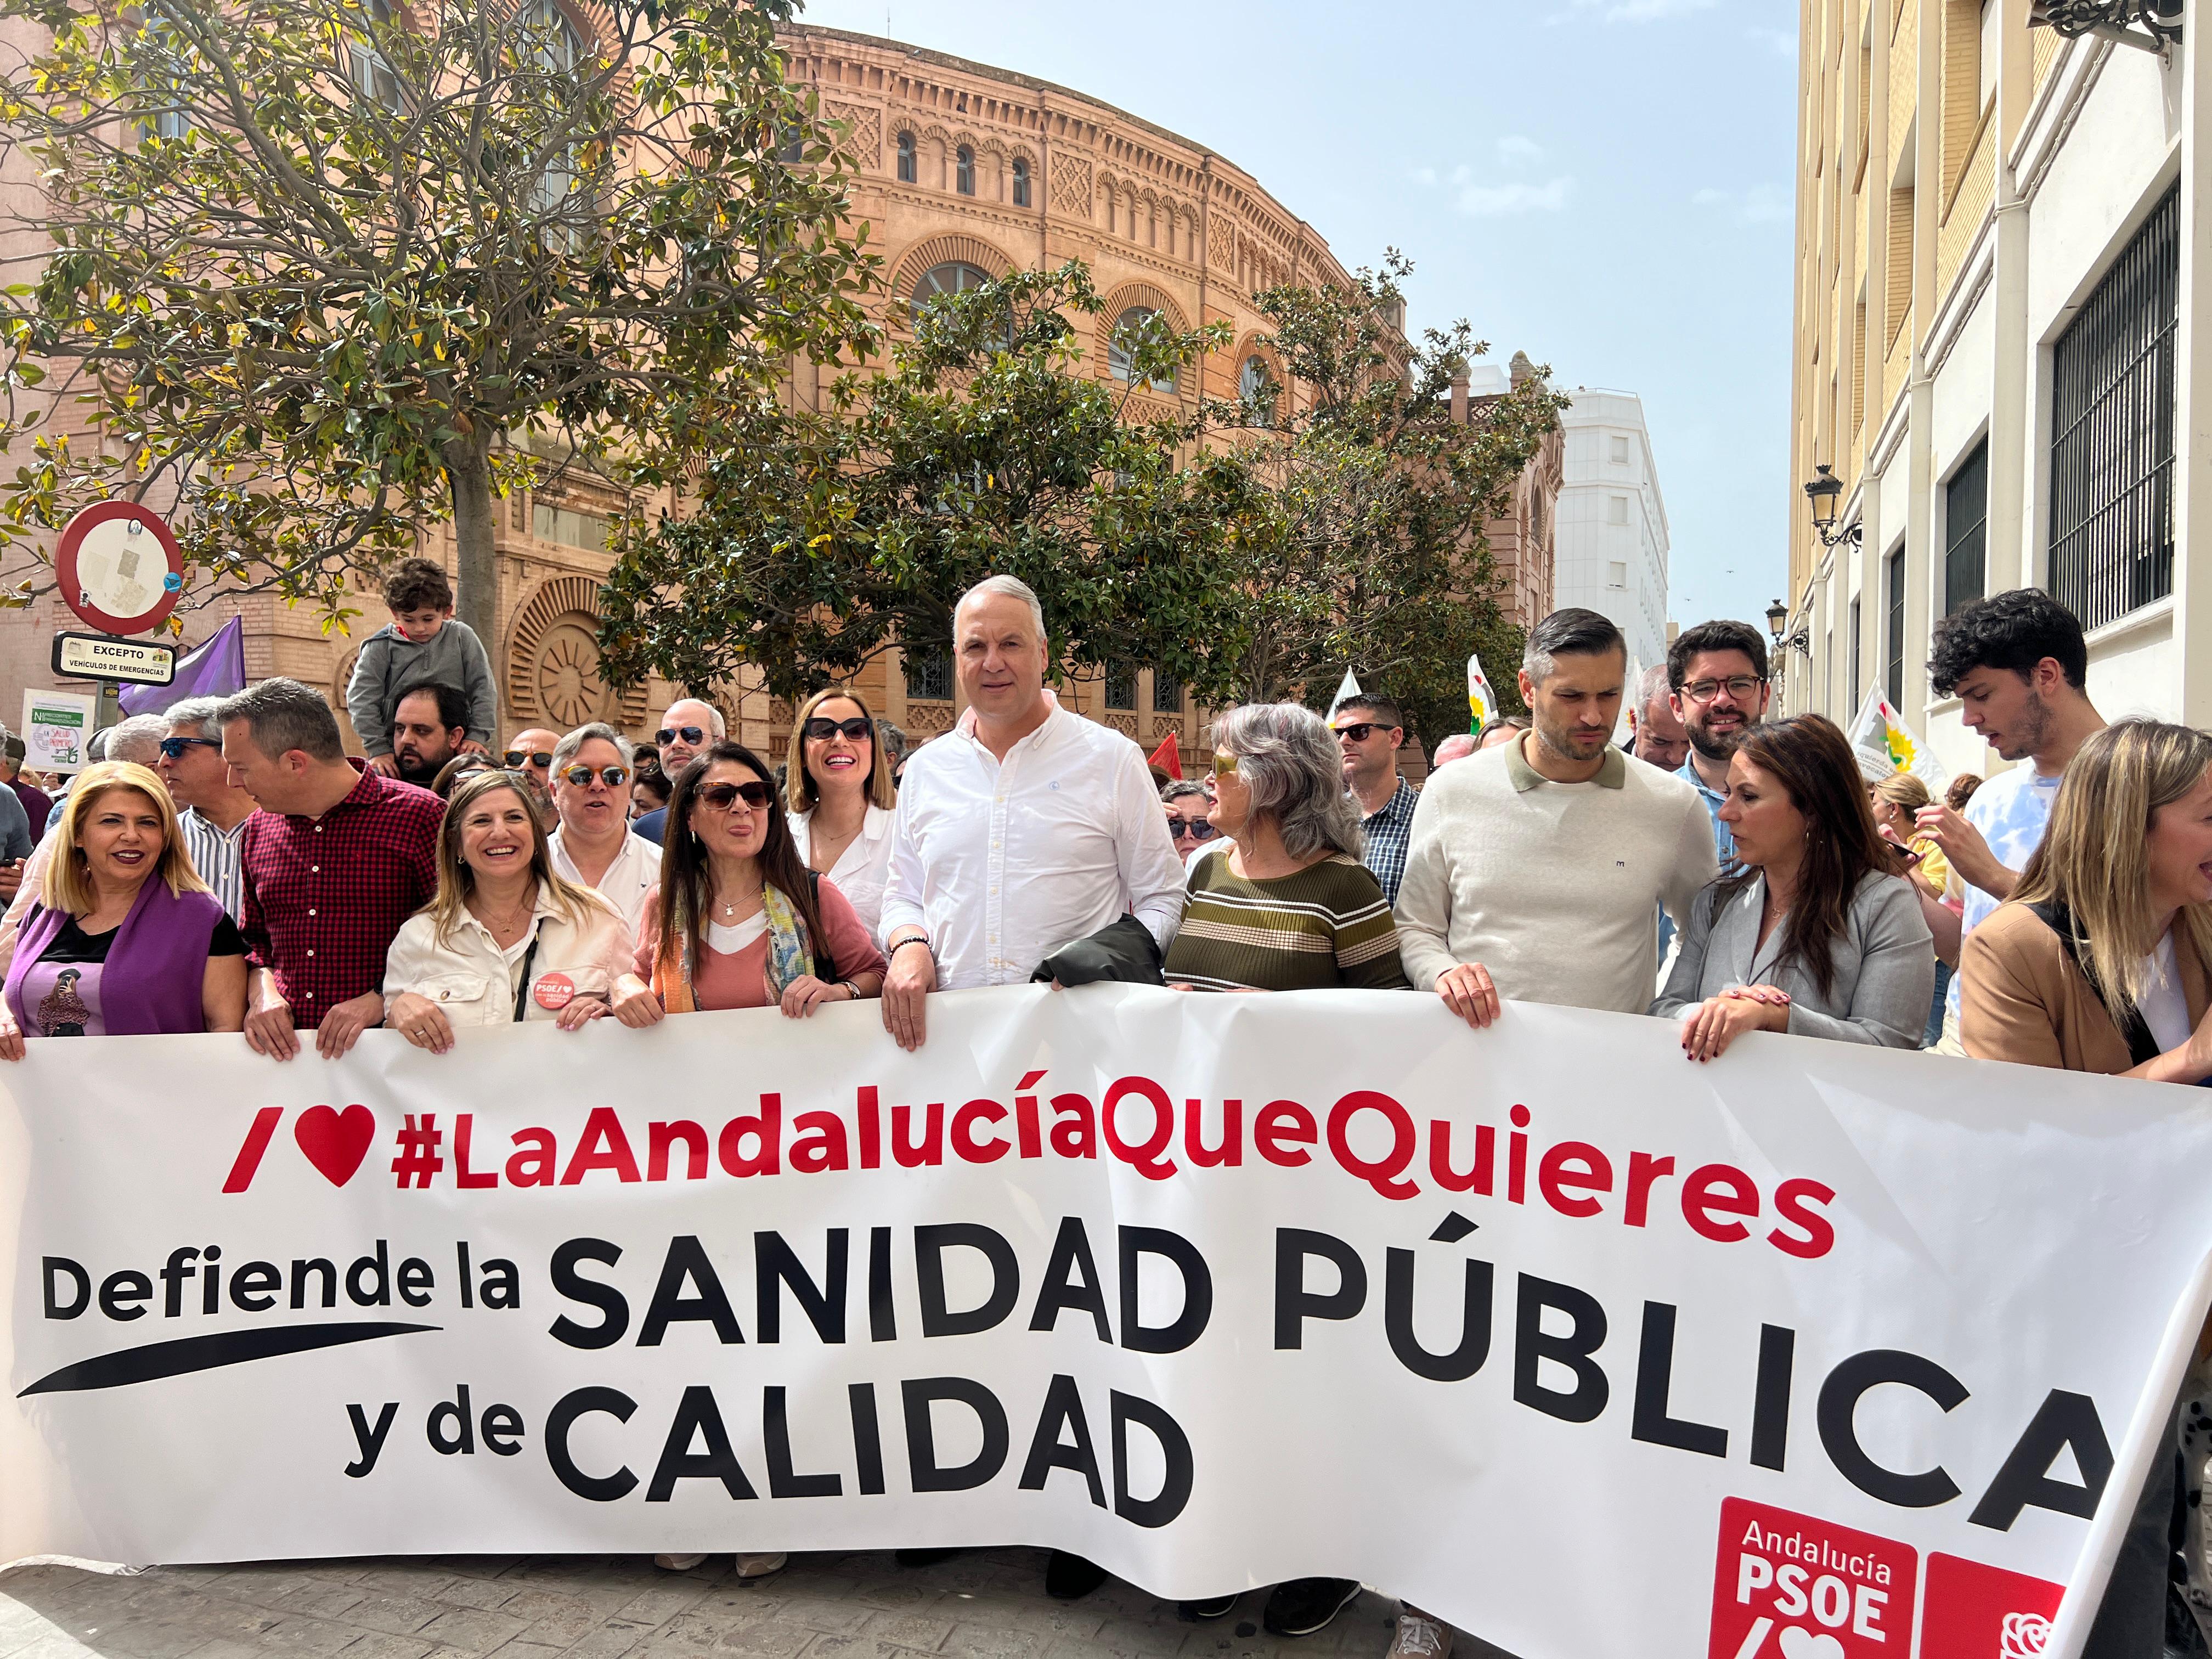 El PSOE critica el "desvío de fondos a la sanidad privada" en la manifestación de Marea Blanca